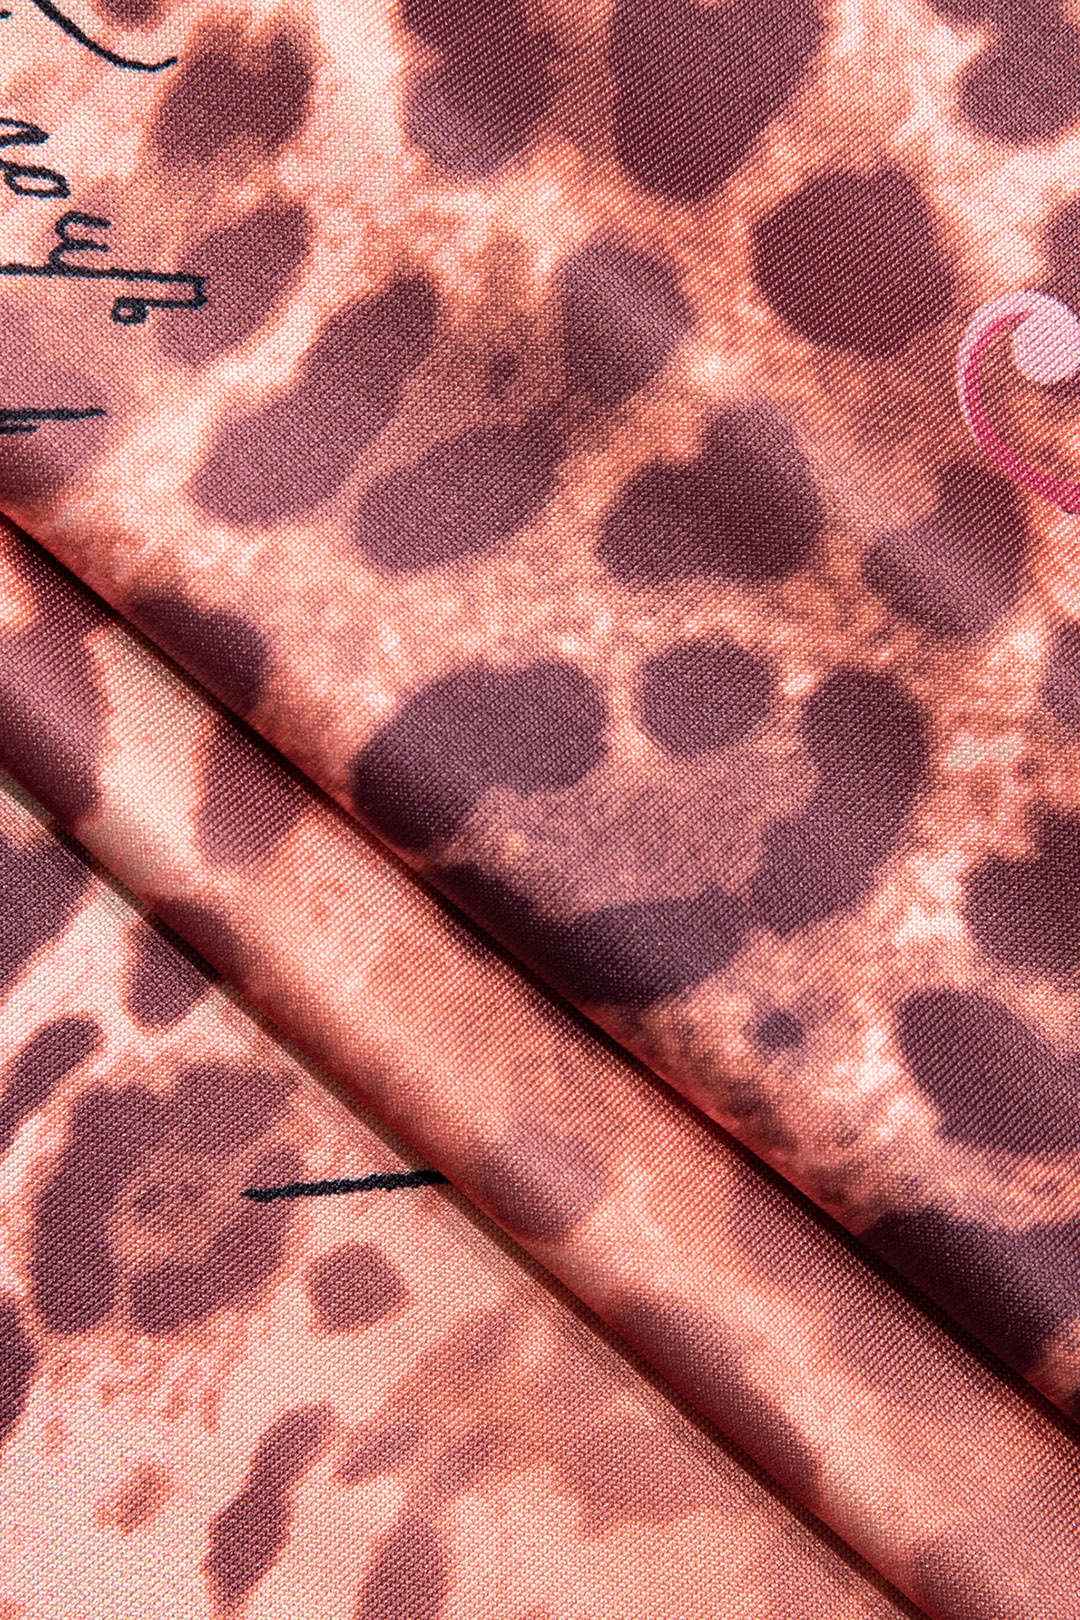 Leopard Print Slip V-neck Jumpsuit